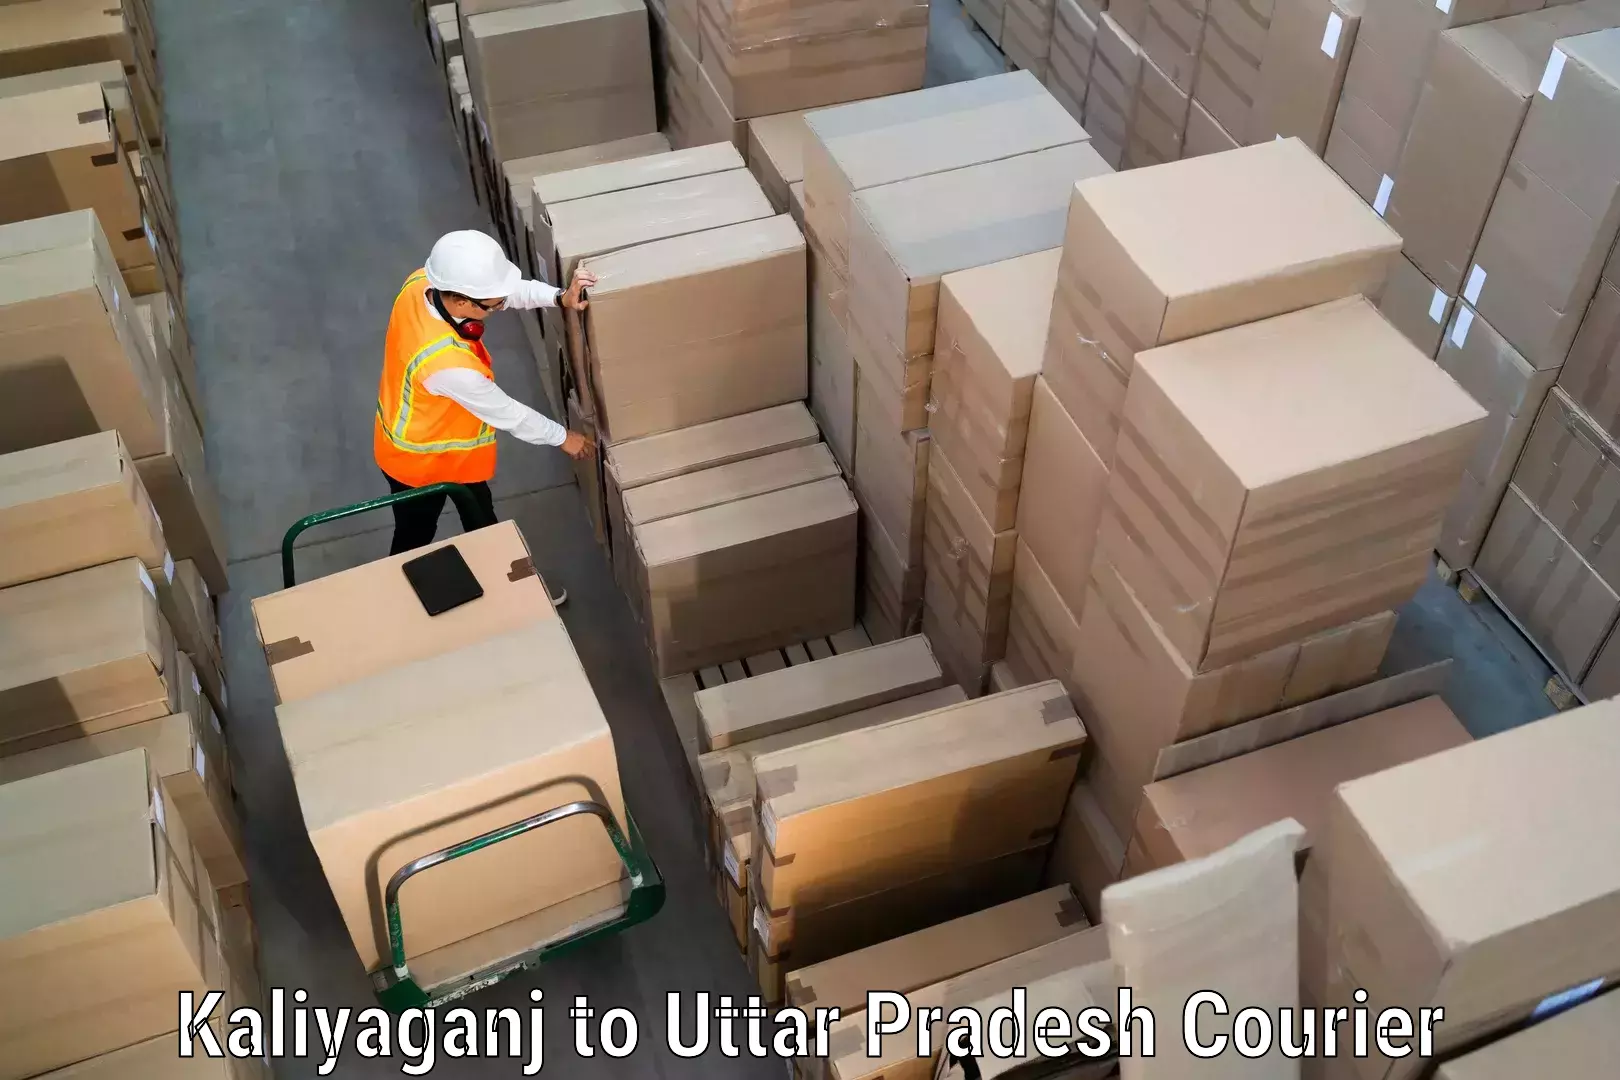 Custom courier packaging Kaliyaganj to Bidhuna